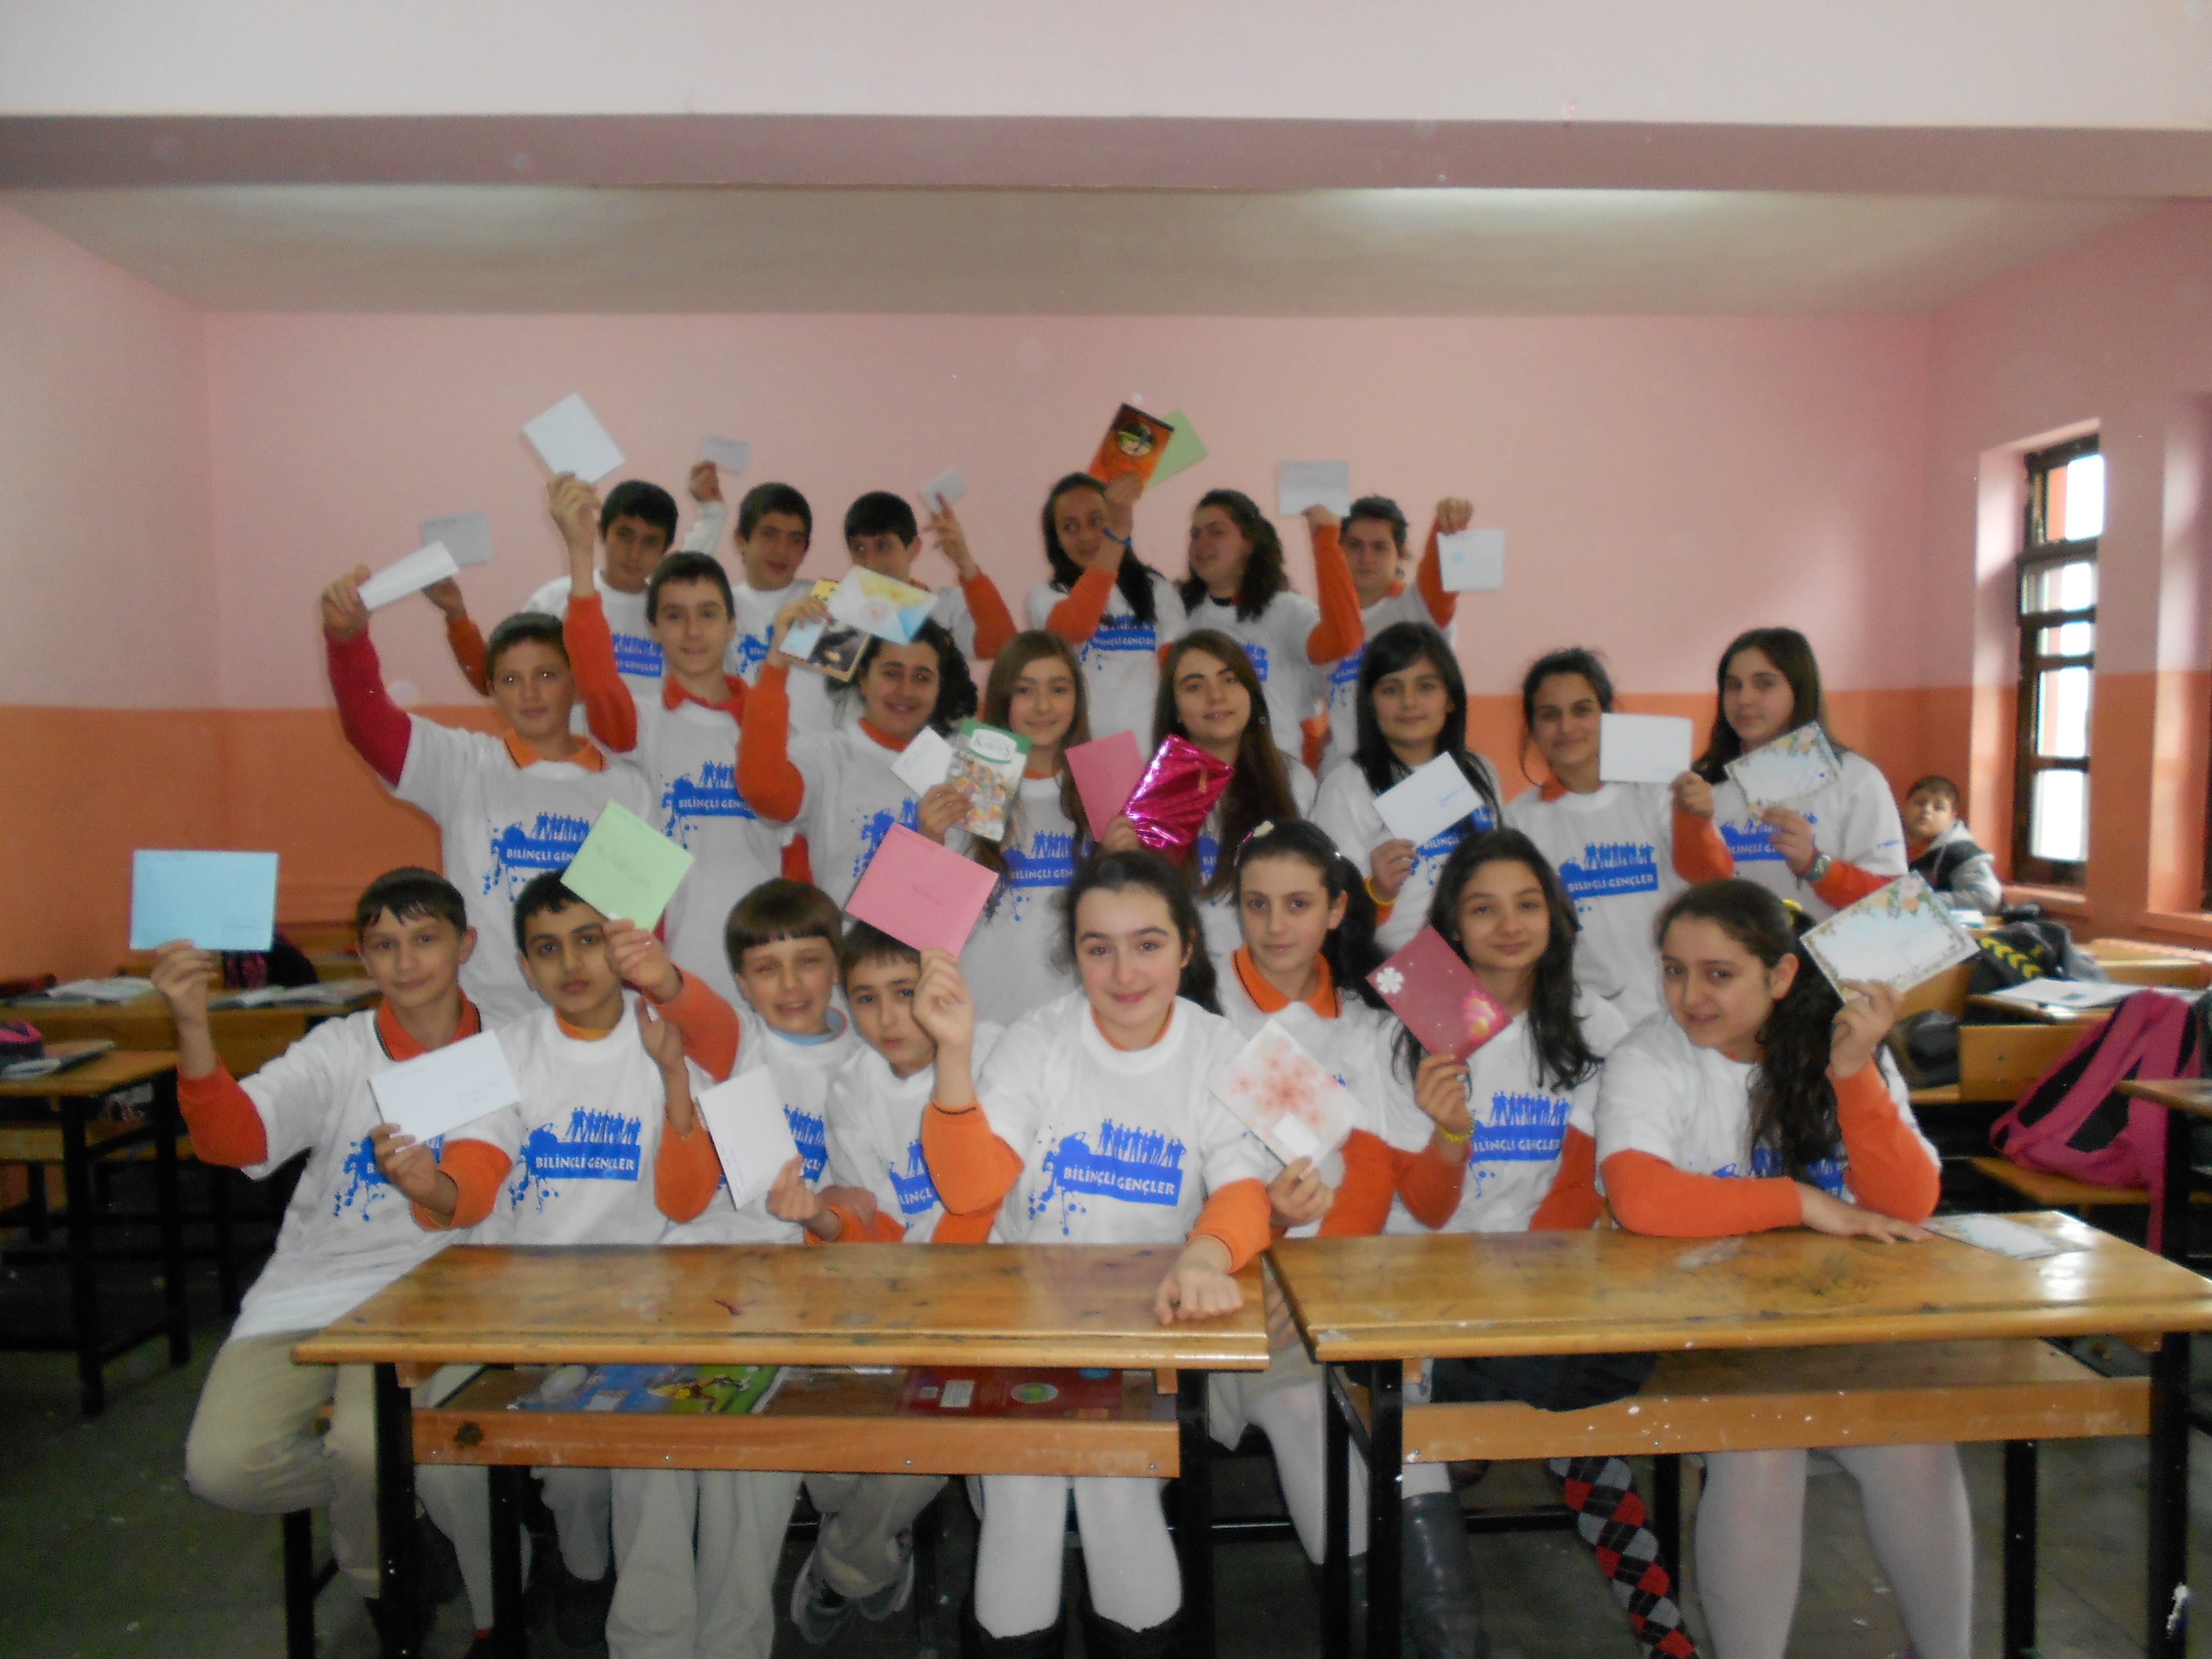 Bilinçli Gençler Derneği - Türkiye Bilinçli Gençlik Projesi - "MEKTUP ARKADAŞLIĞINDAN KİTAP ARKADAŞLIĞINA DOSTLUK KÖPRÜSÜ -3" - 23 Nisan İlköğretim Okulu - SAMSUN